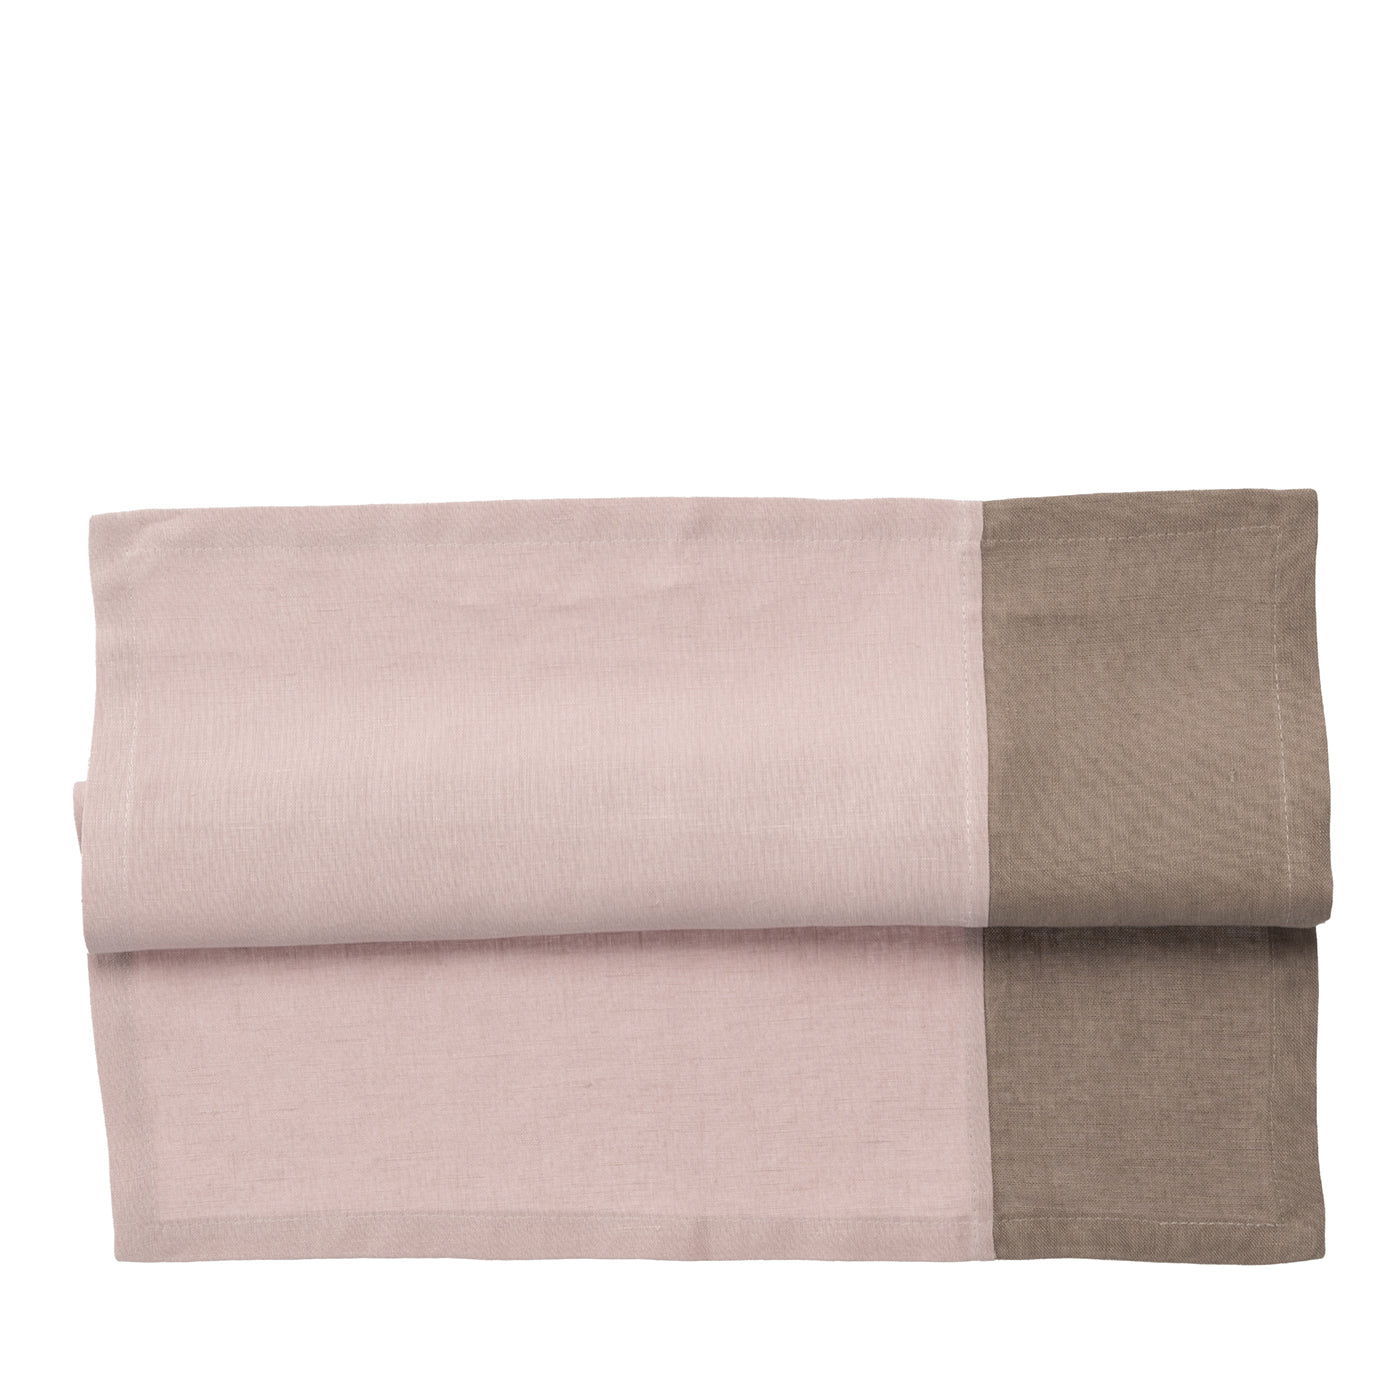 Set de 4 Servilletas de Lino Bicolor Plata Rosa-Taupe de Lujo - Vista principal